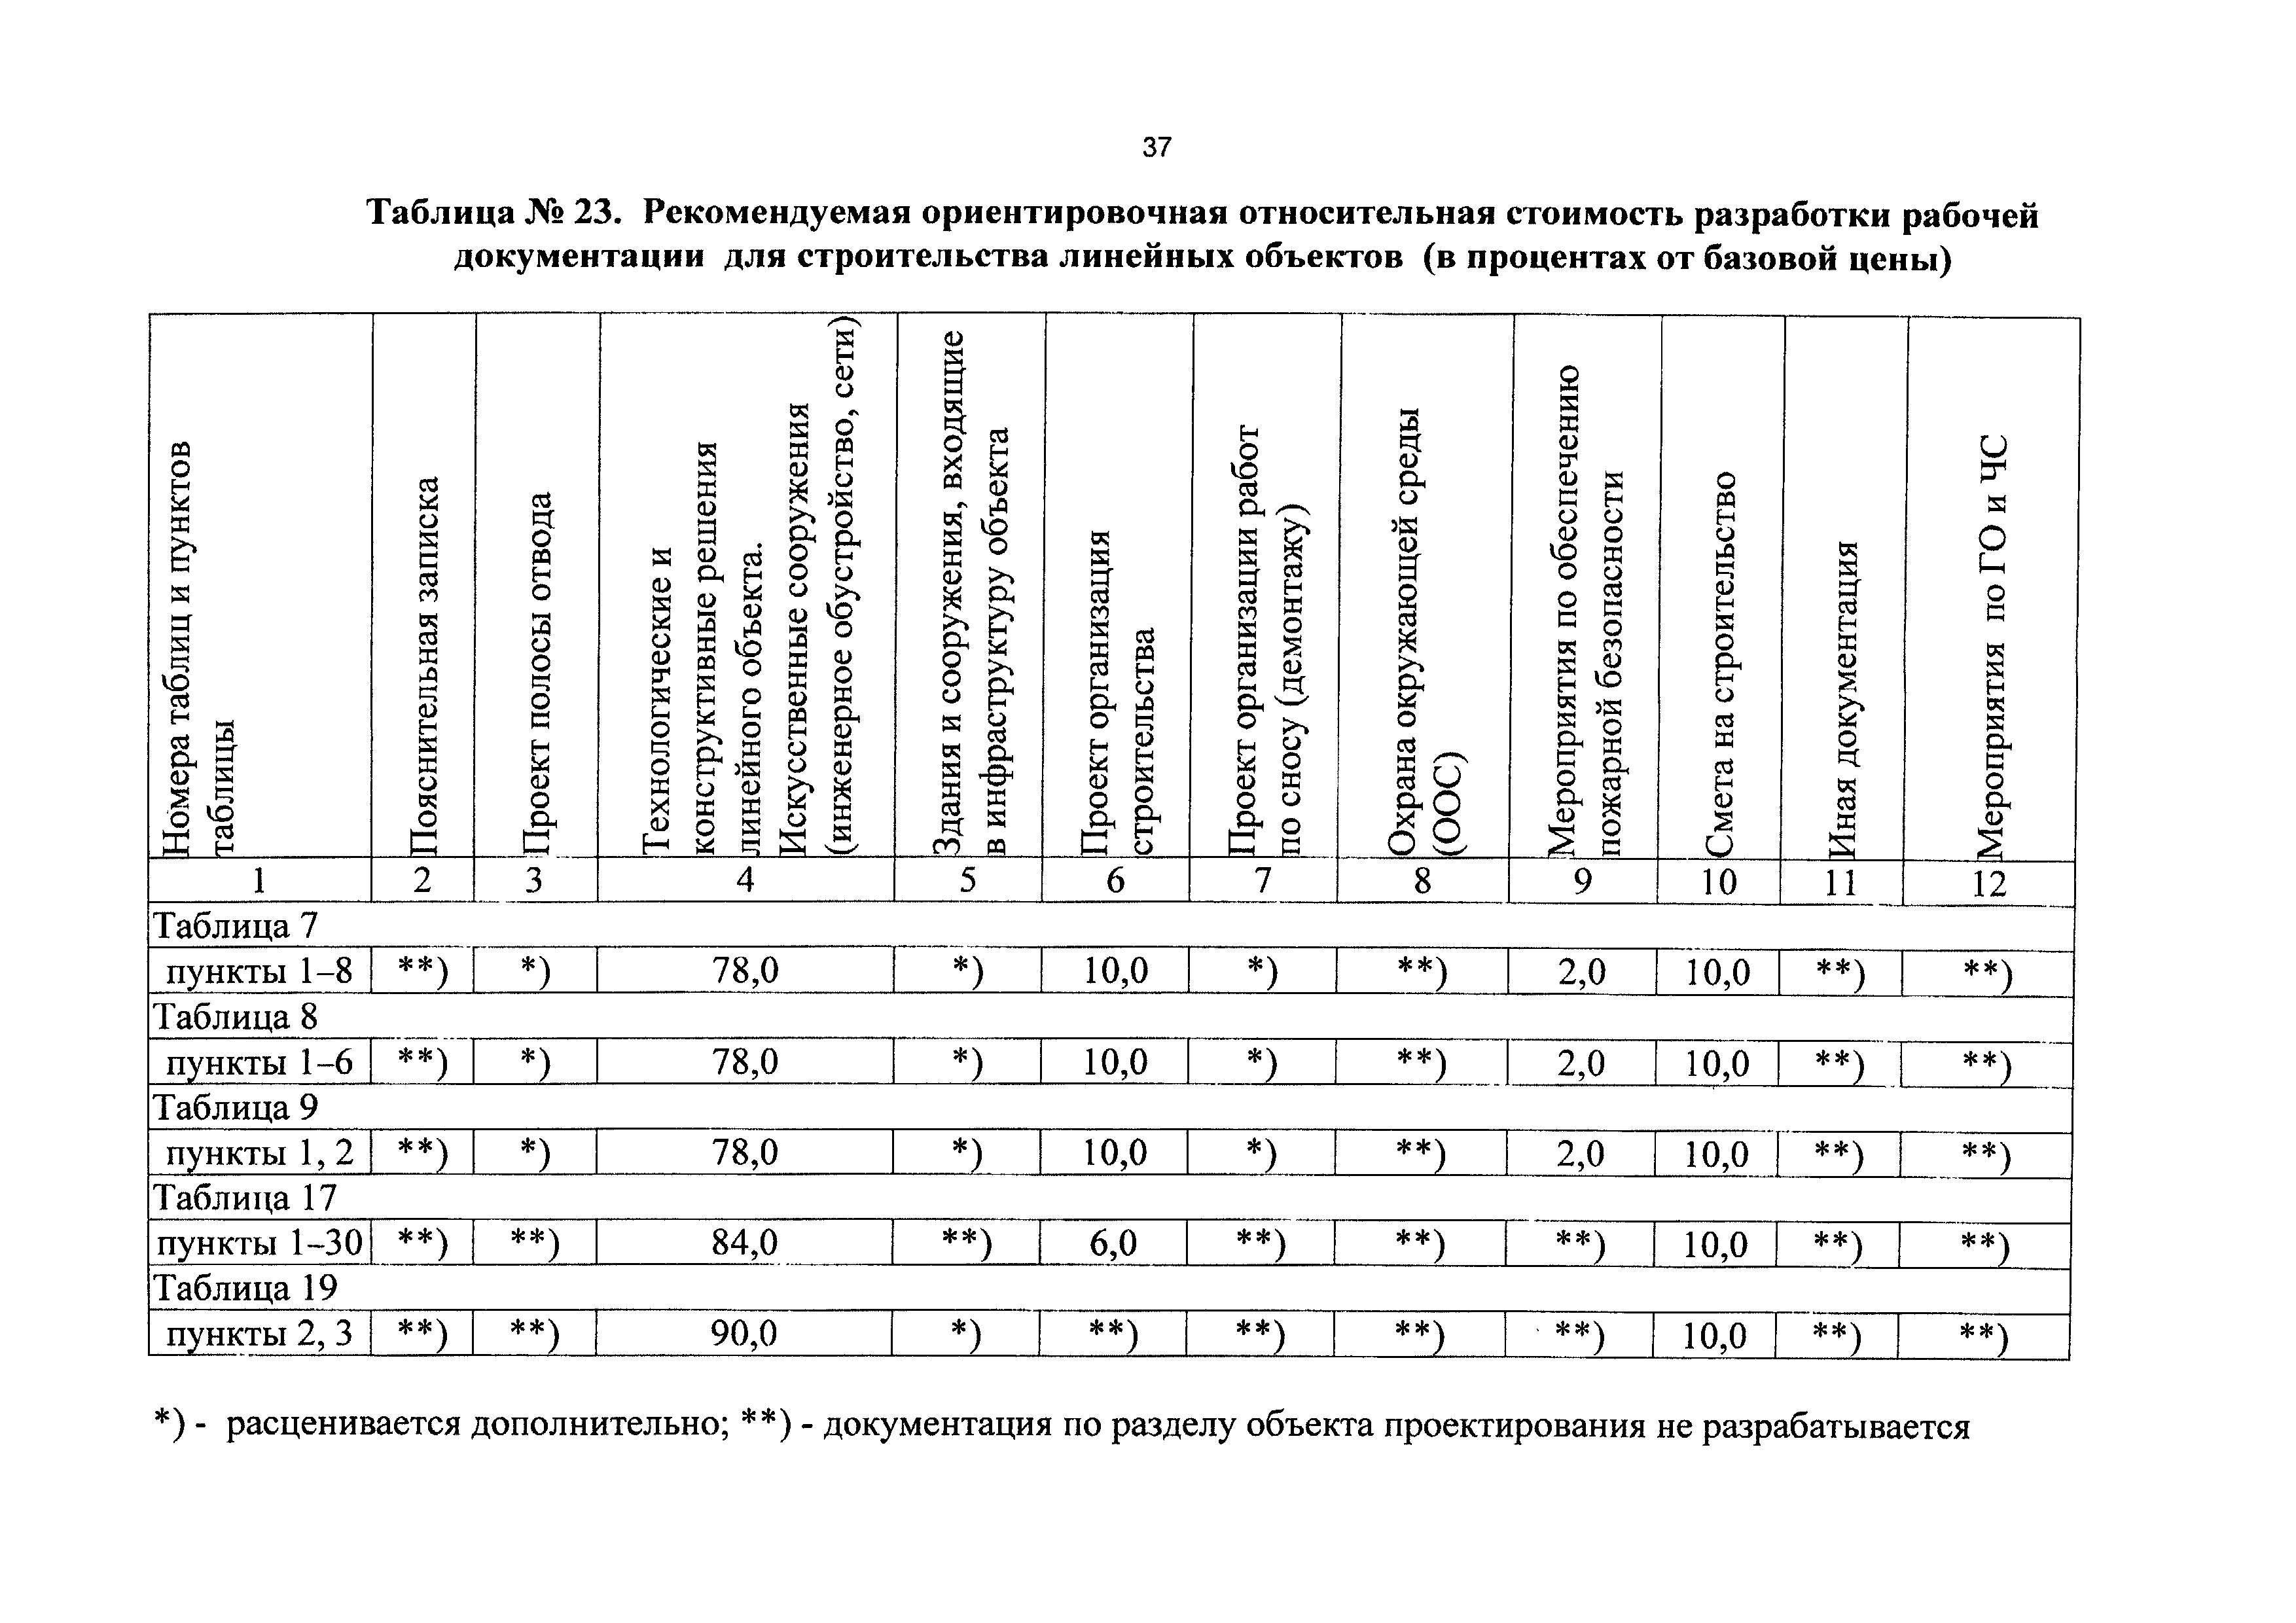 Справочник базовых цен 81 2001 03